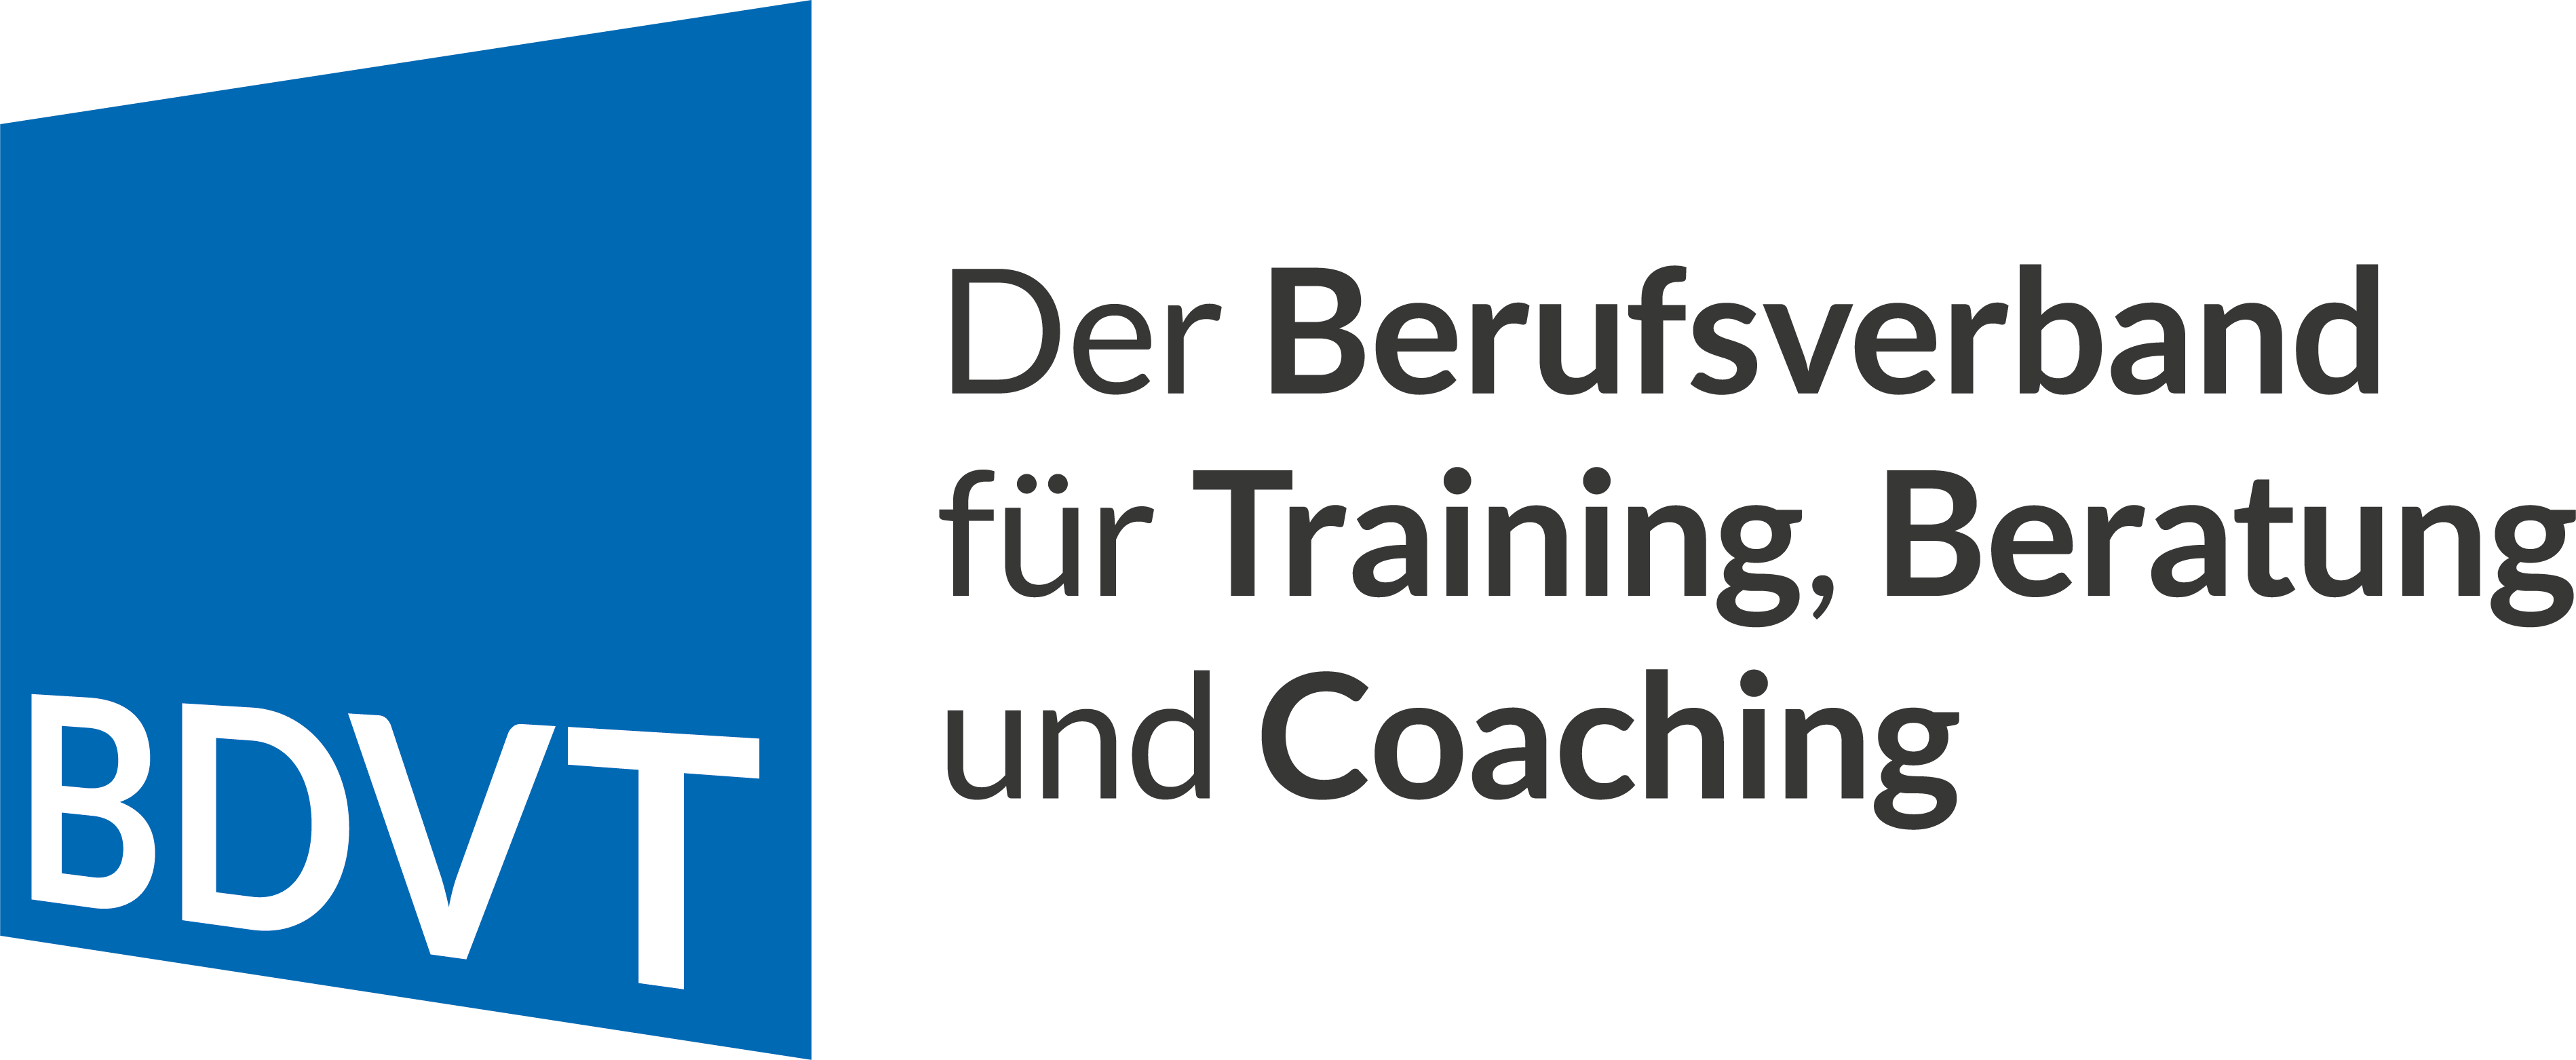 BDVT e.V. - Der Berufsverband für Training, Beratung und Coaching Logo